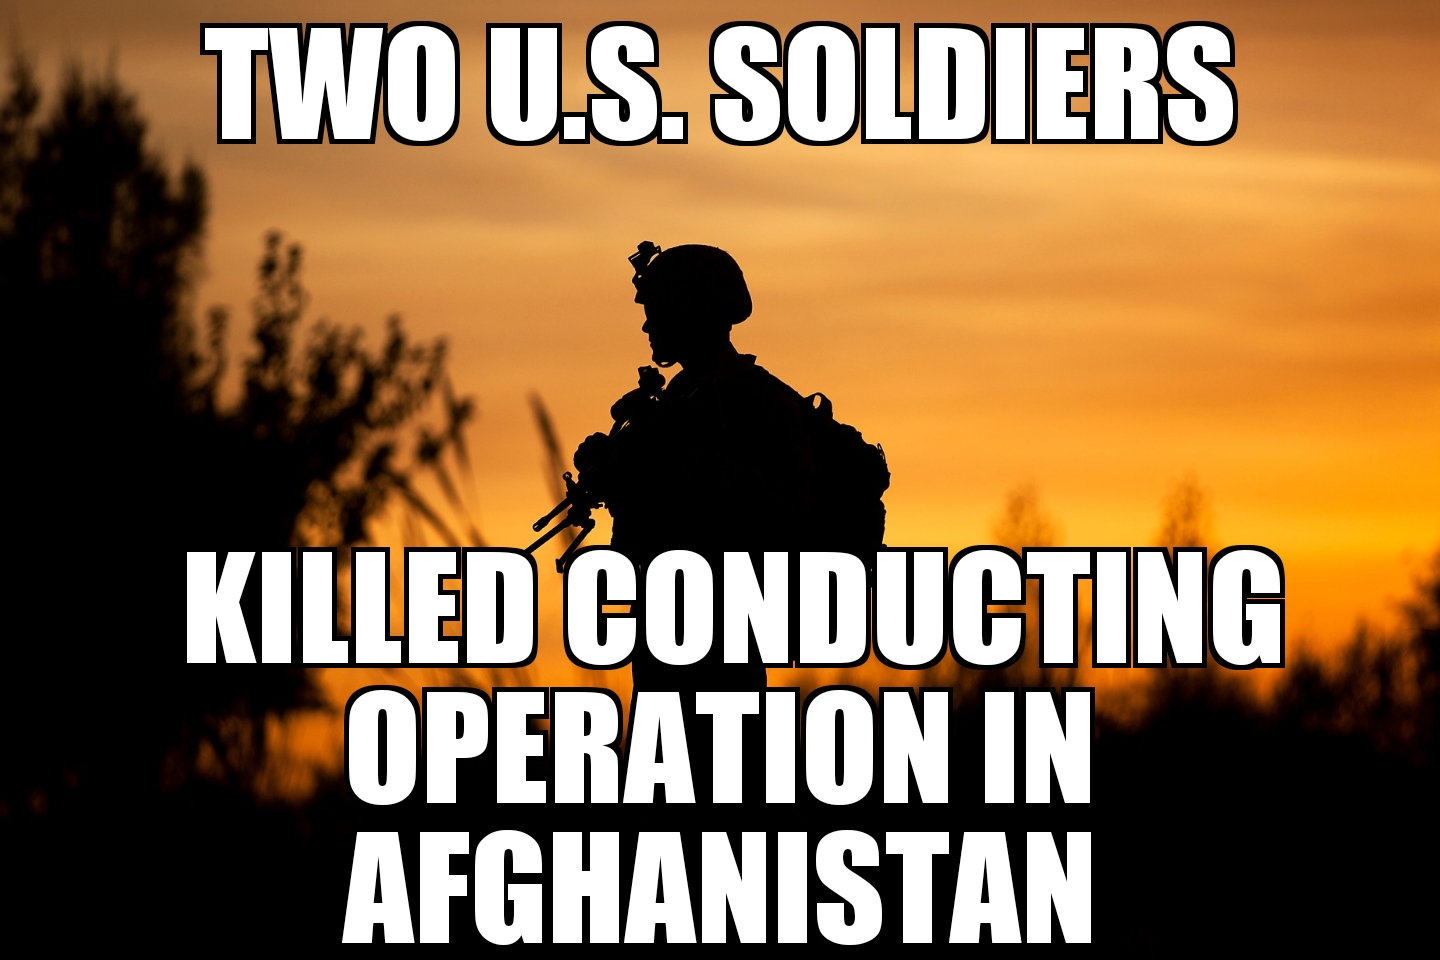 U.S. soldiers killed in Afghanistan